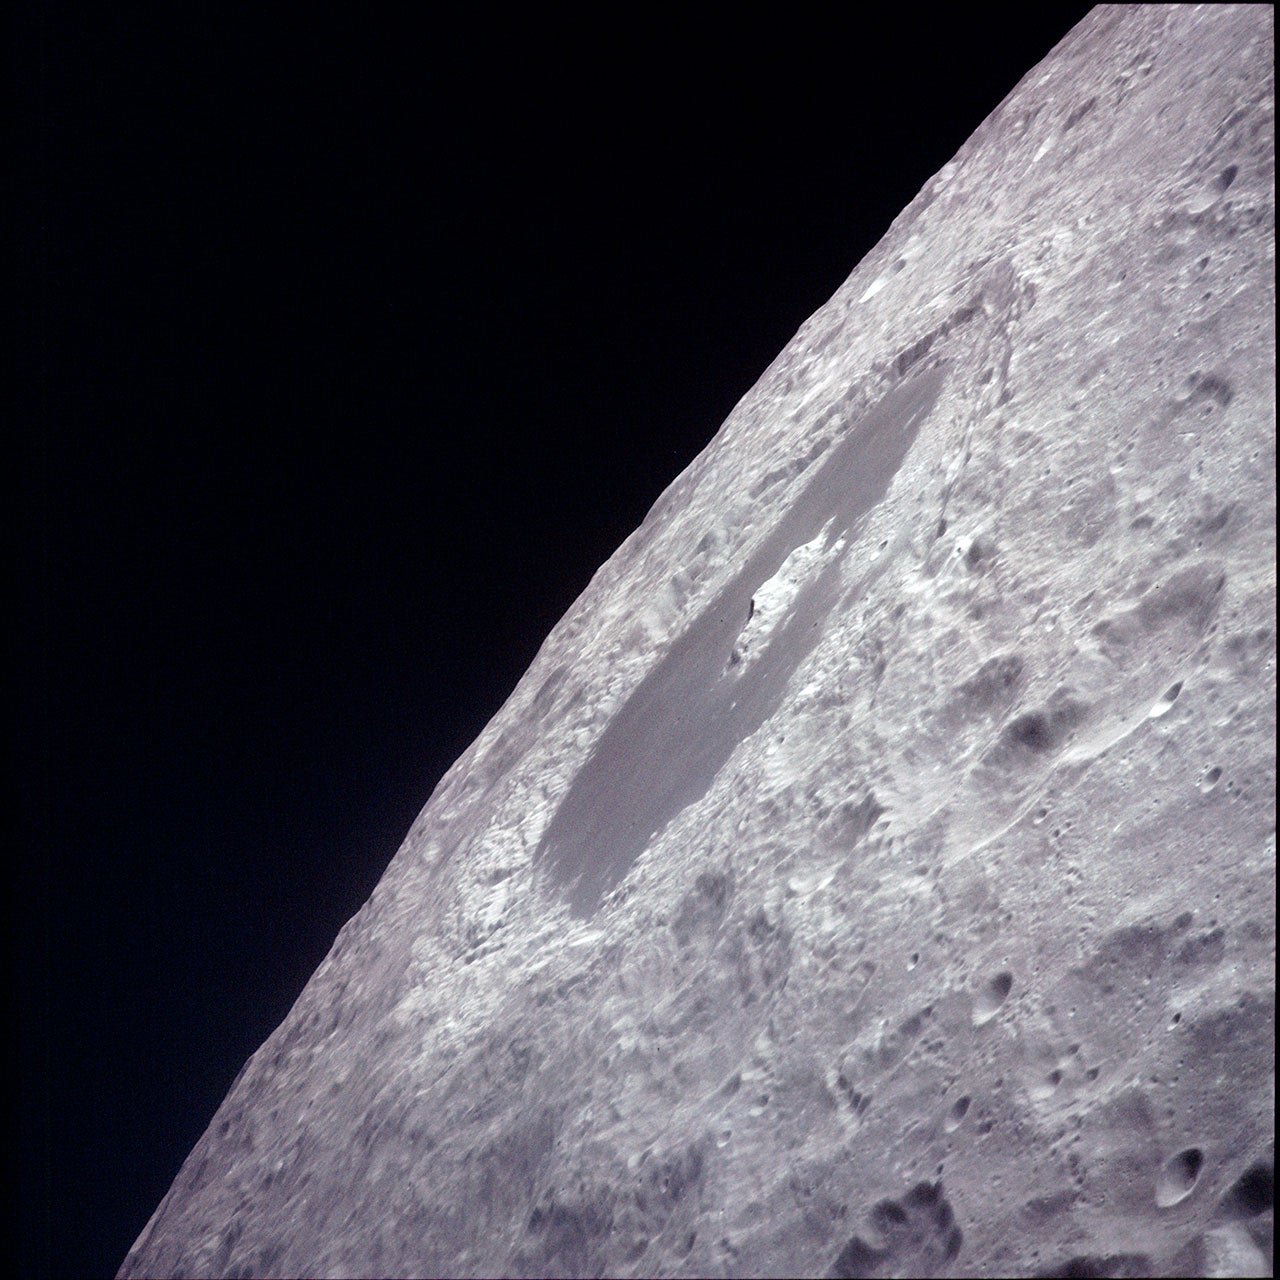 Cratera de Tsiolkovsky, fotografada pelos astronautas da Apollo 13 enquanto davam a volta na Lua em abril de 1970. (Fonte: NASA/Reprodução)